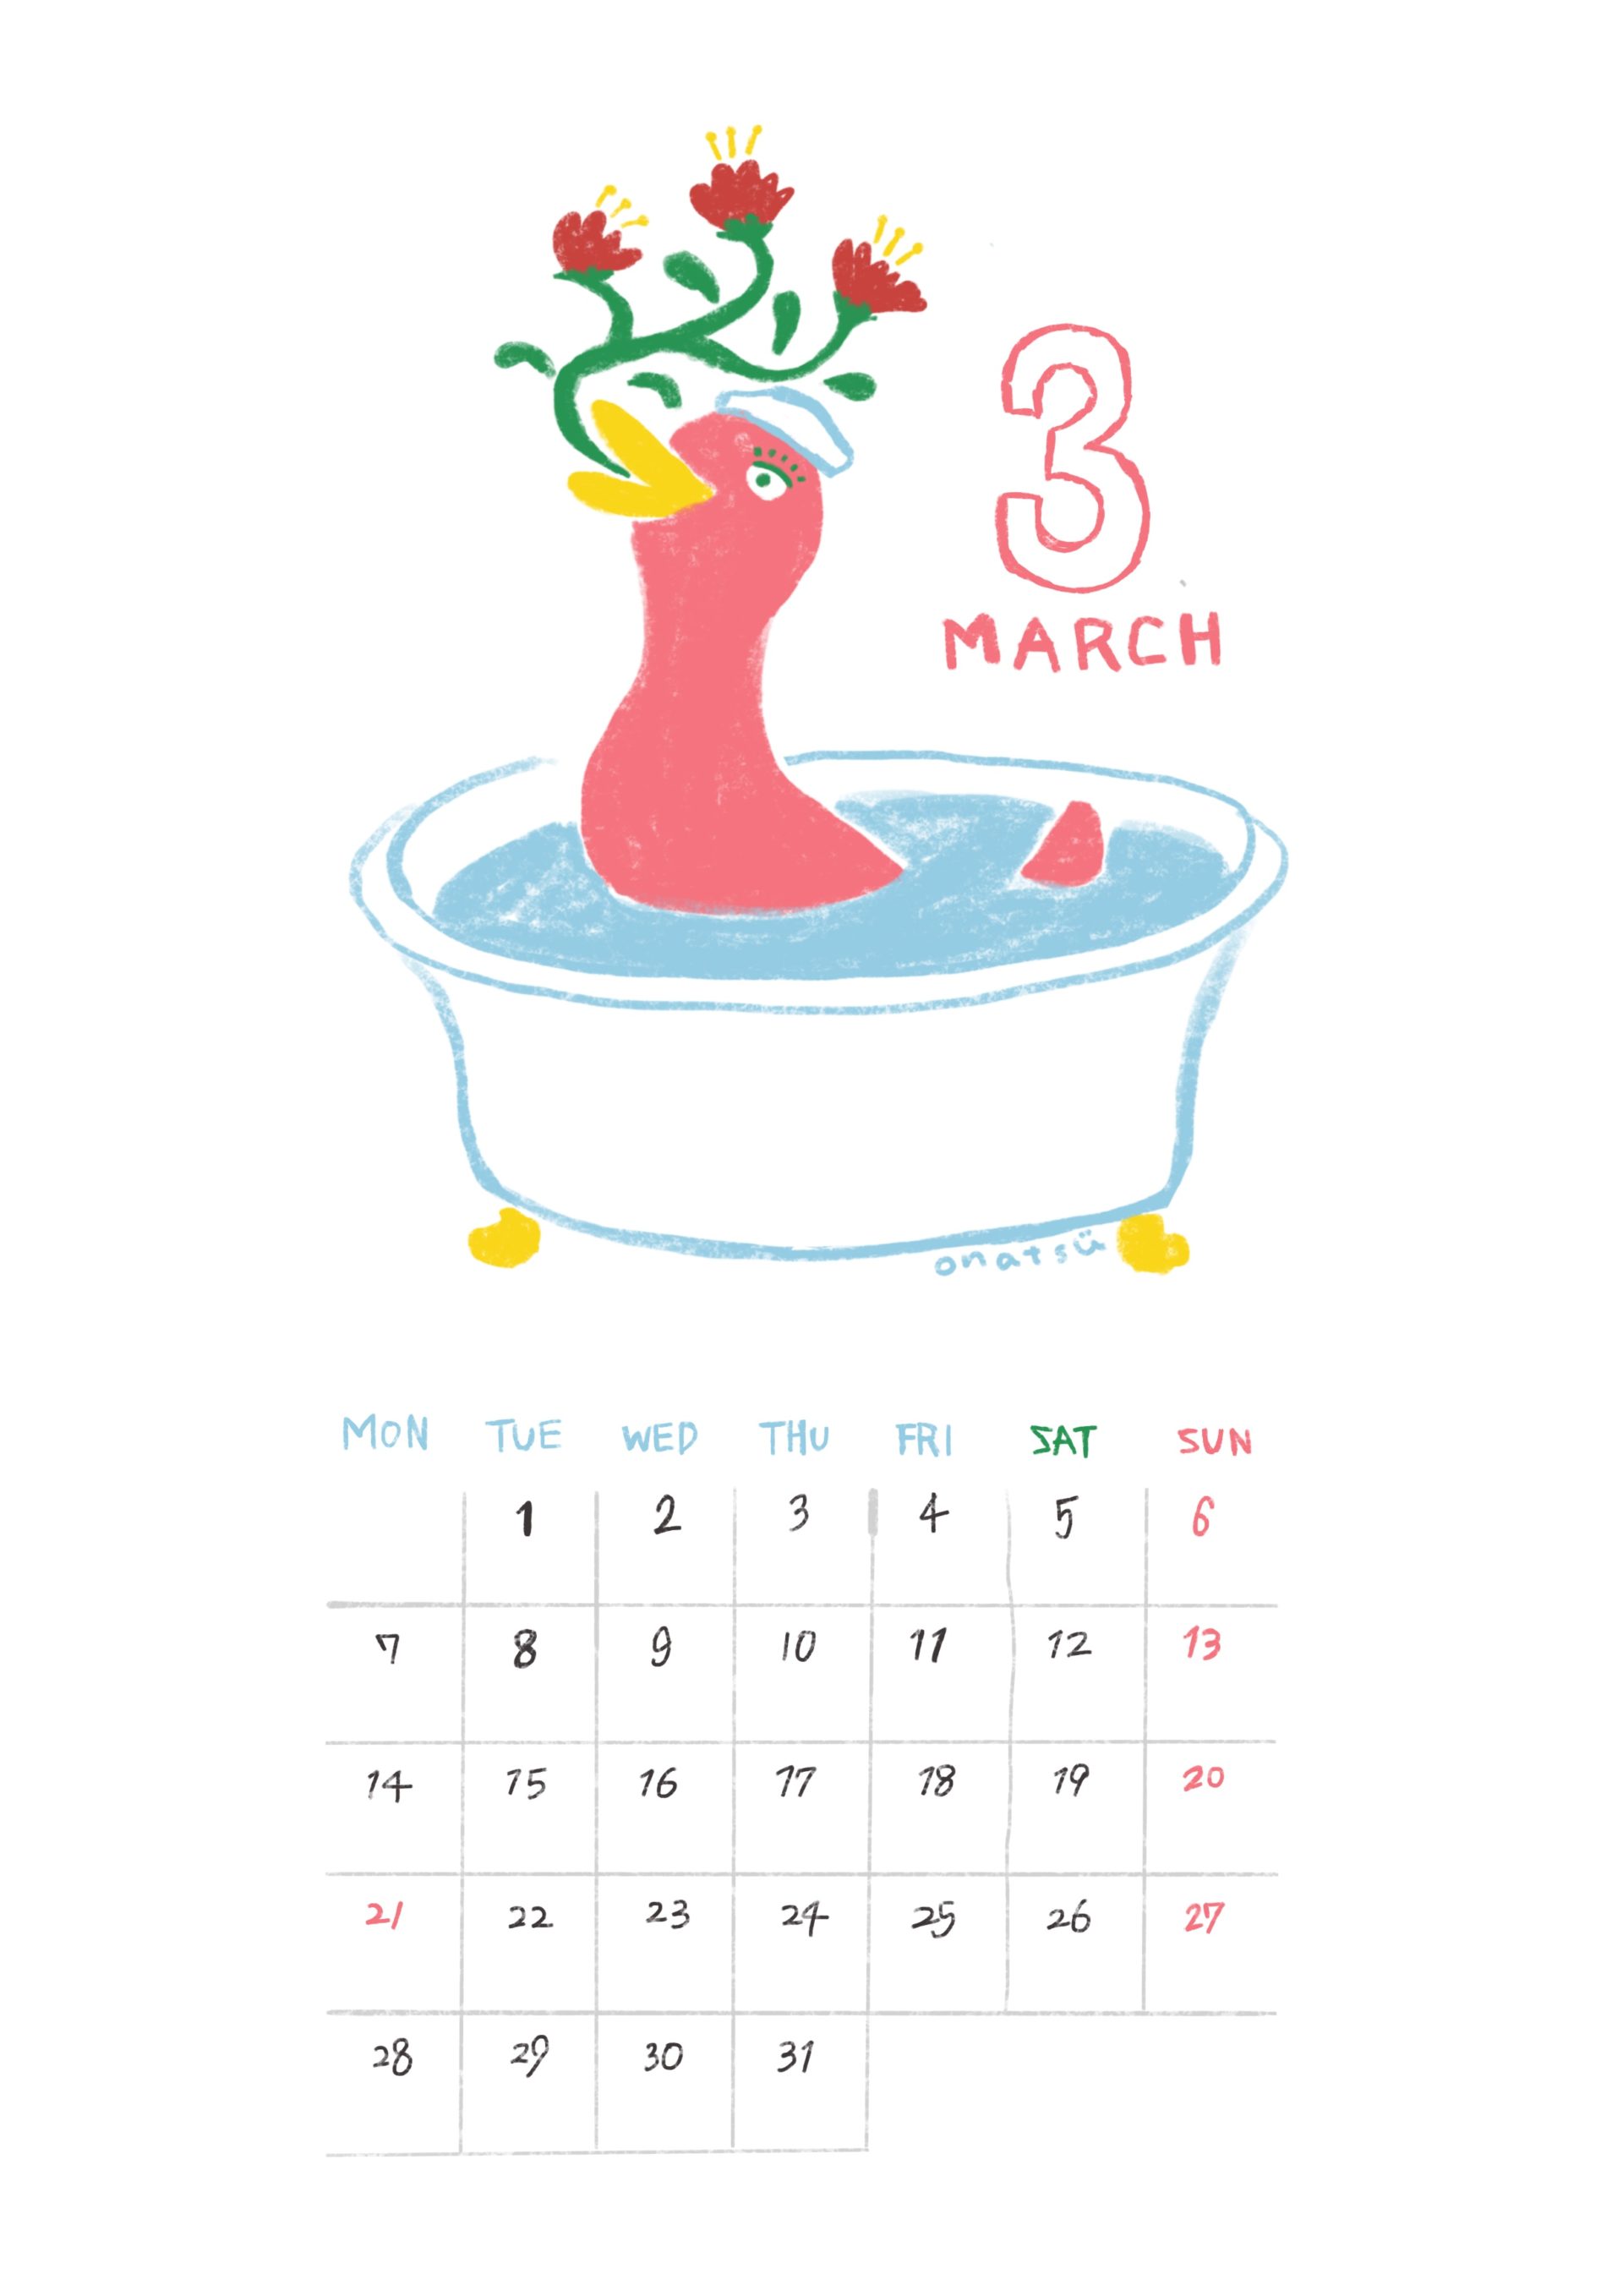 March 2022 calendar Illustration by onatsu